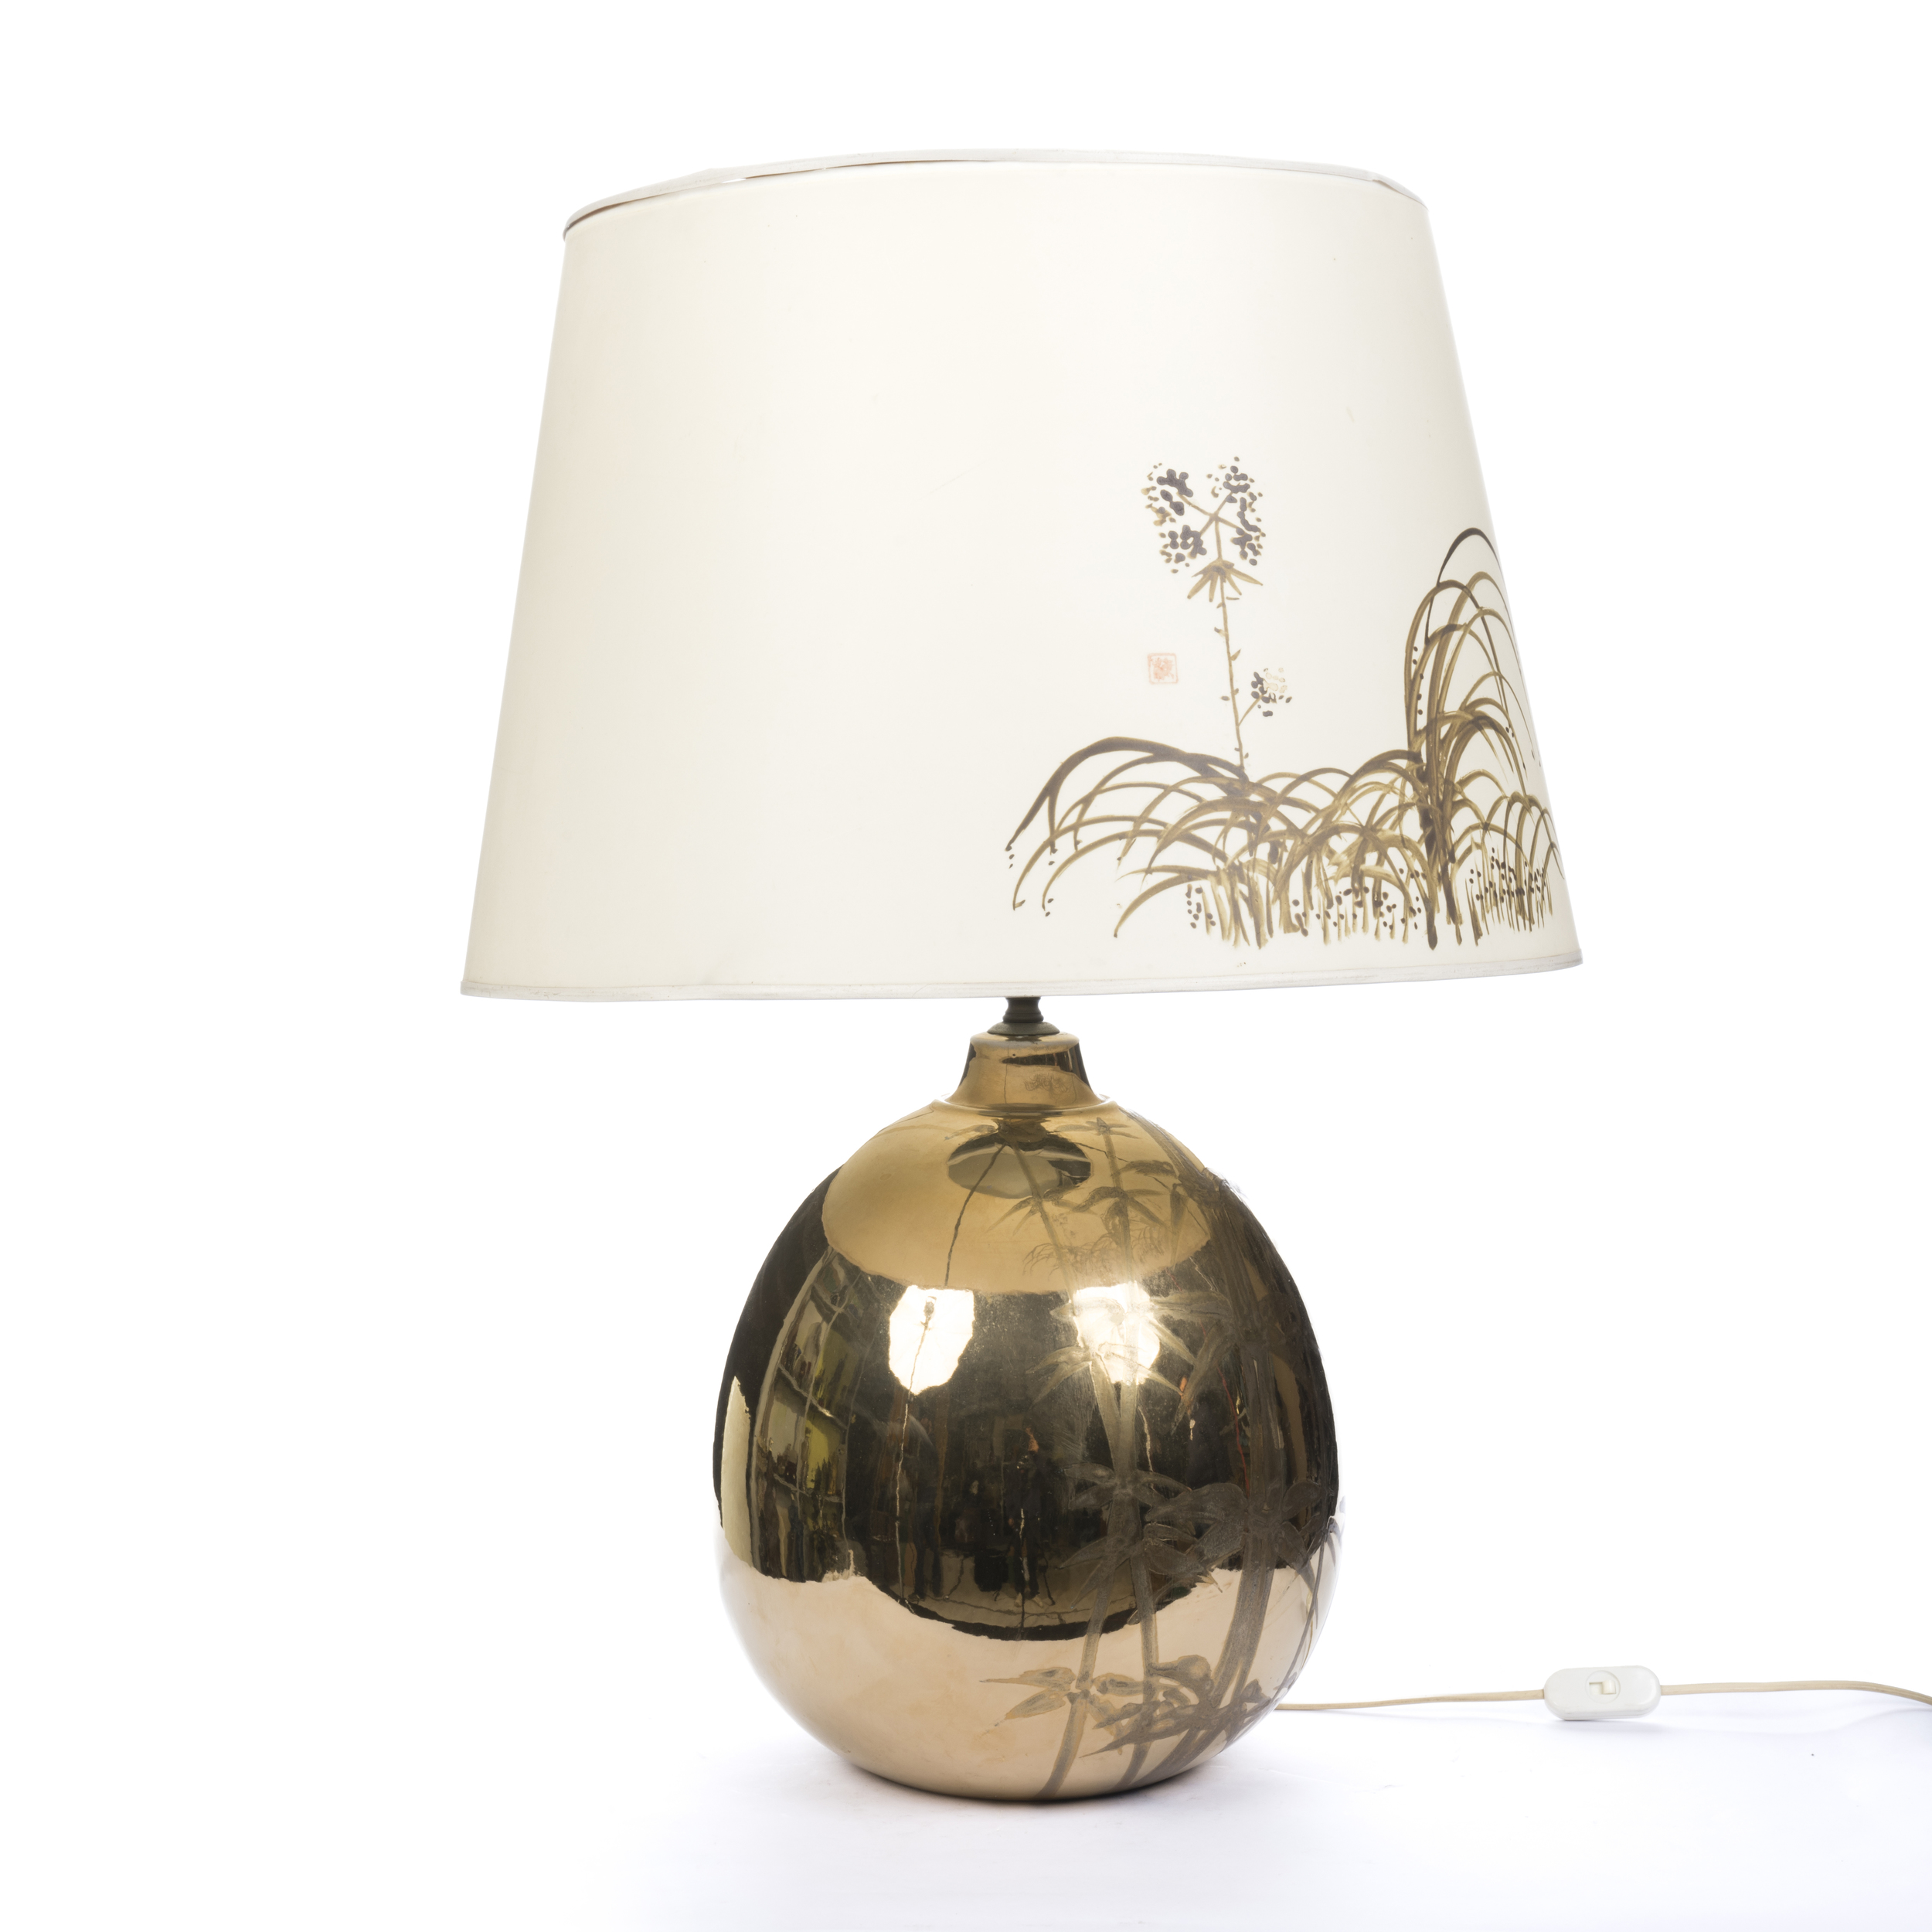 Lampada da tavolo decorata con disegno di bamboo - Image 2 of 4